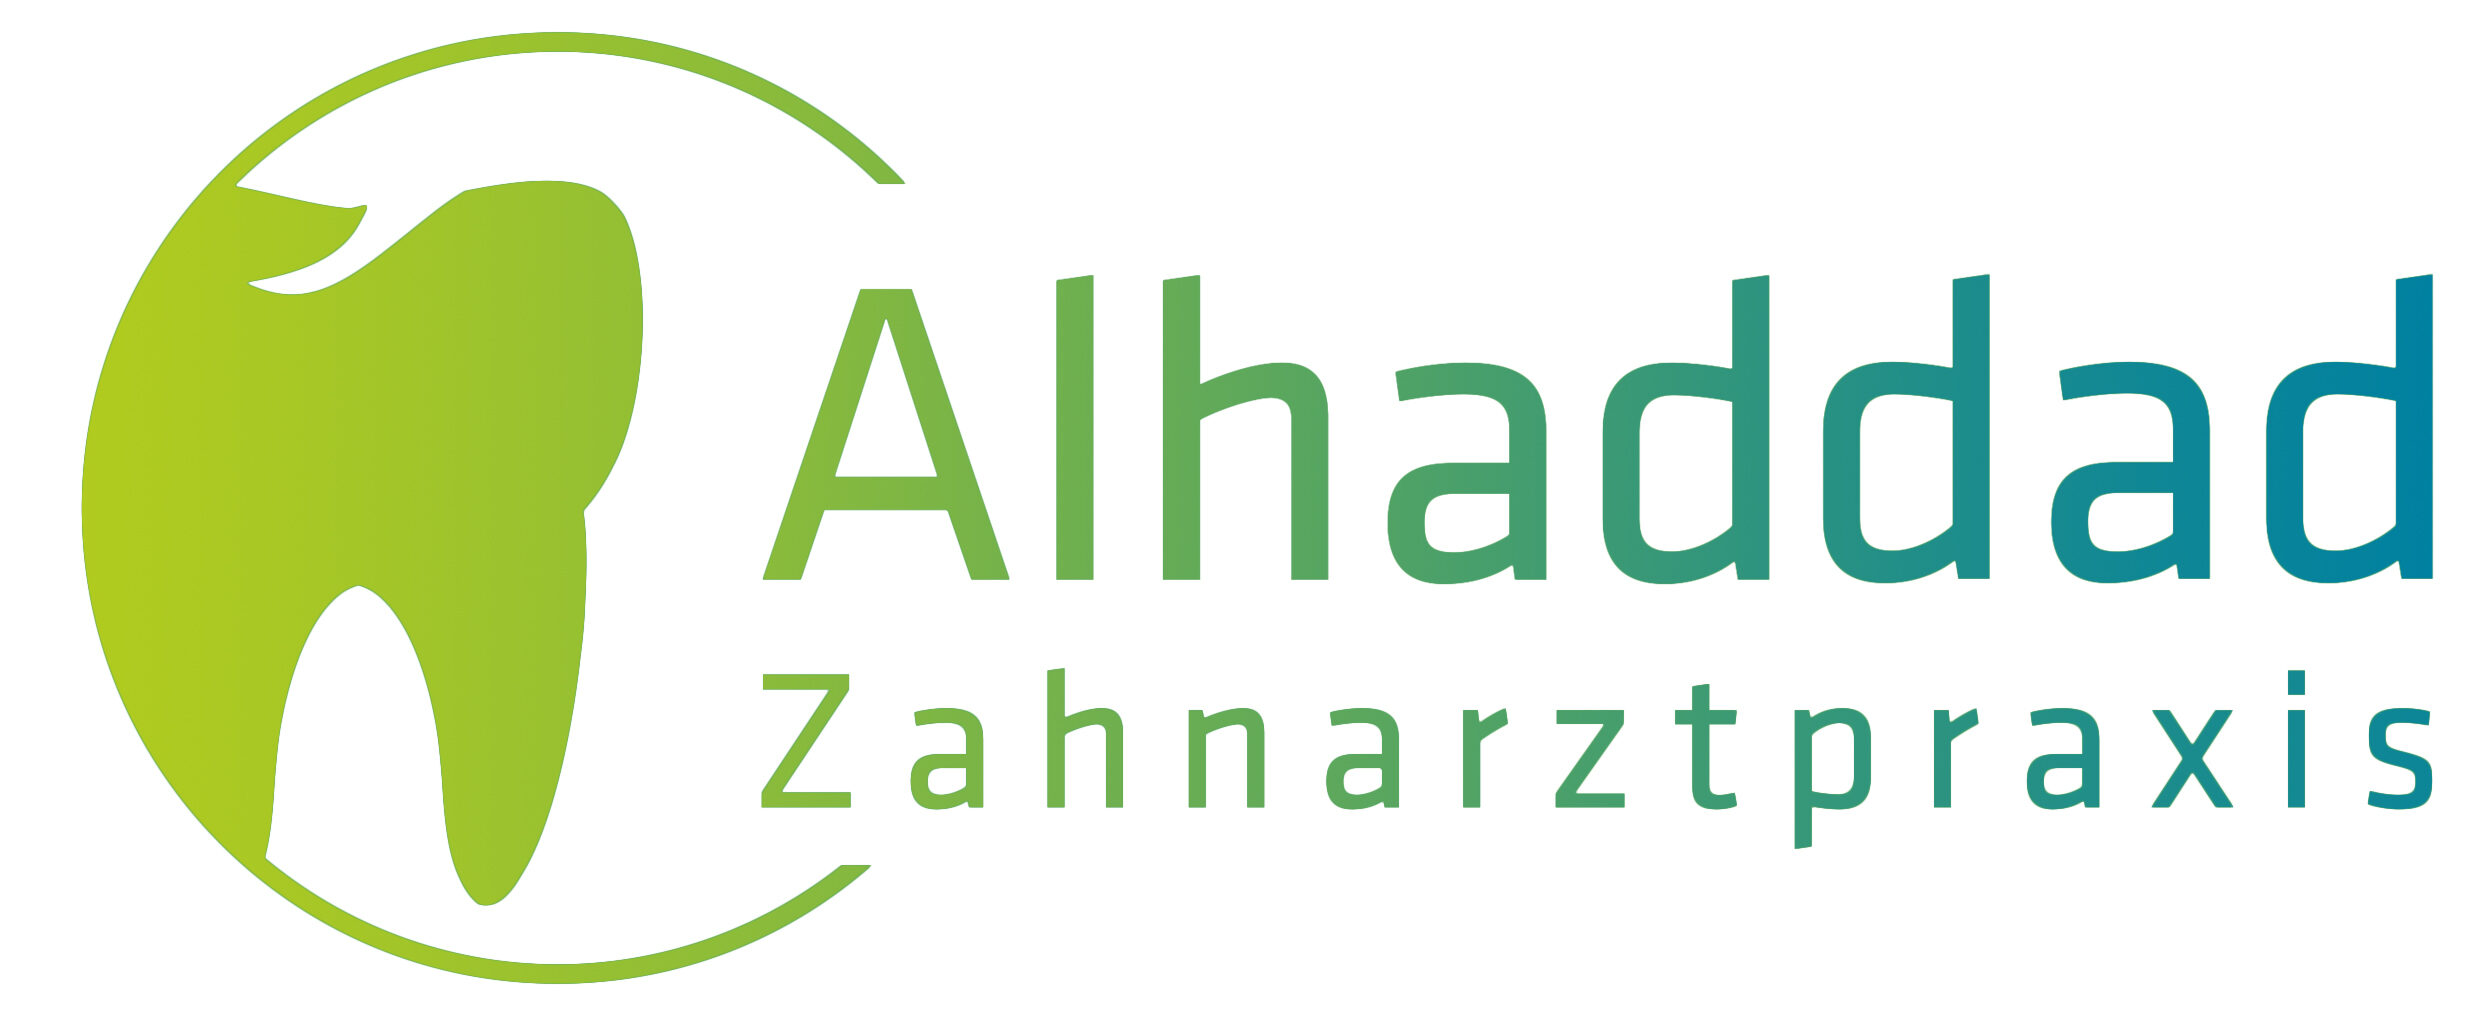 Zahnarztpraxis Ahmad Alhaddad